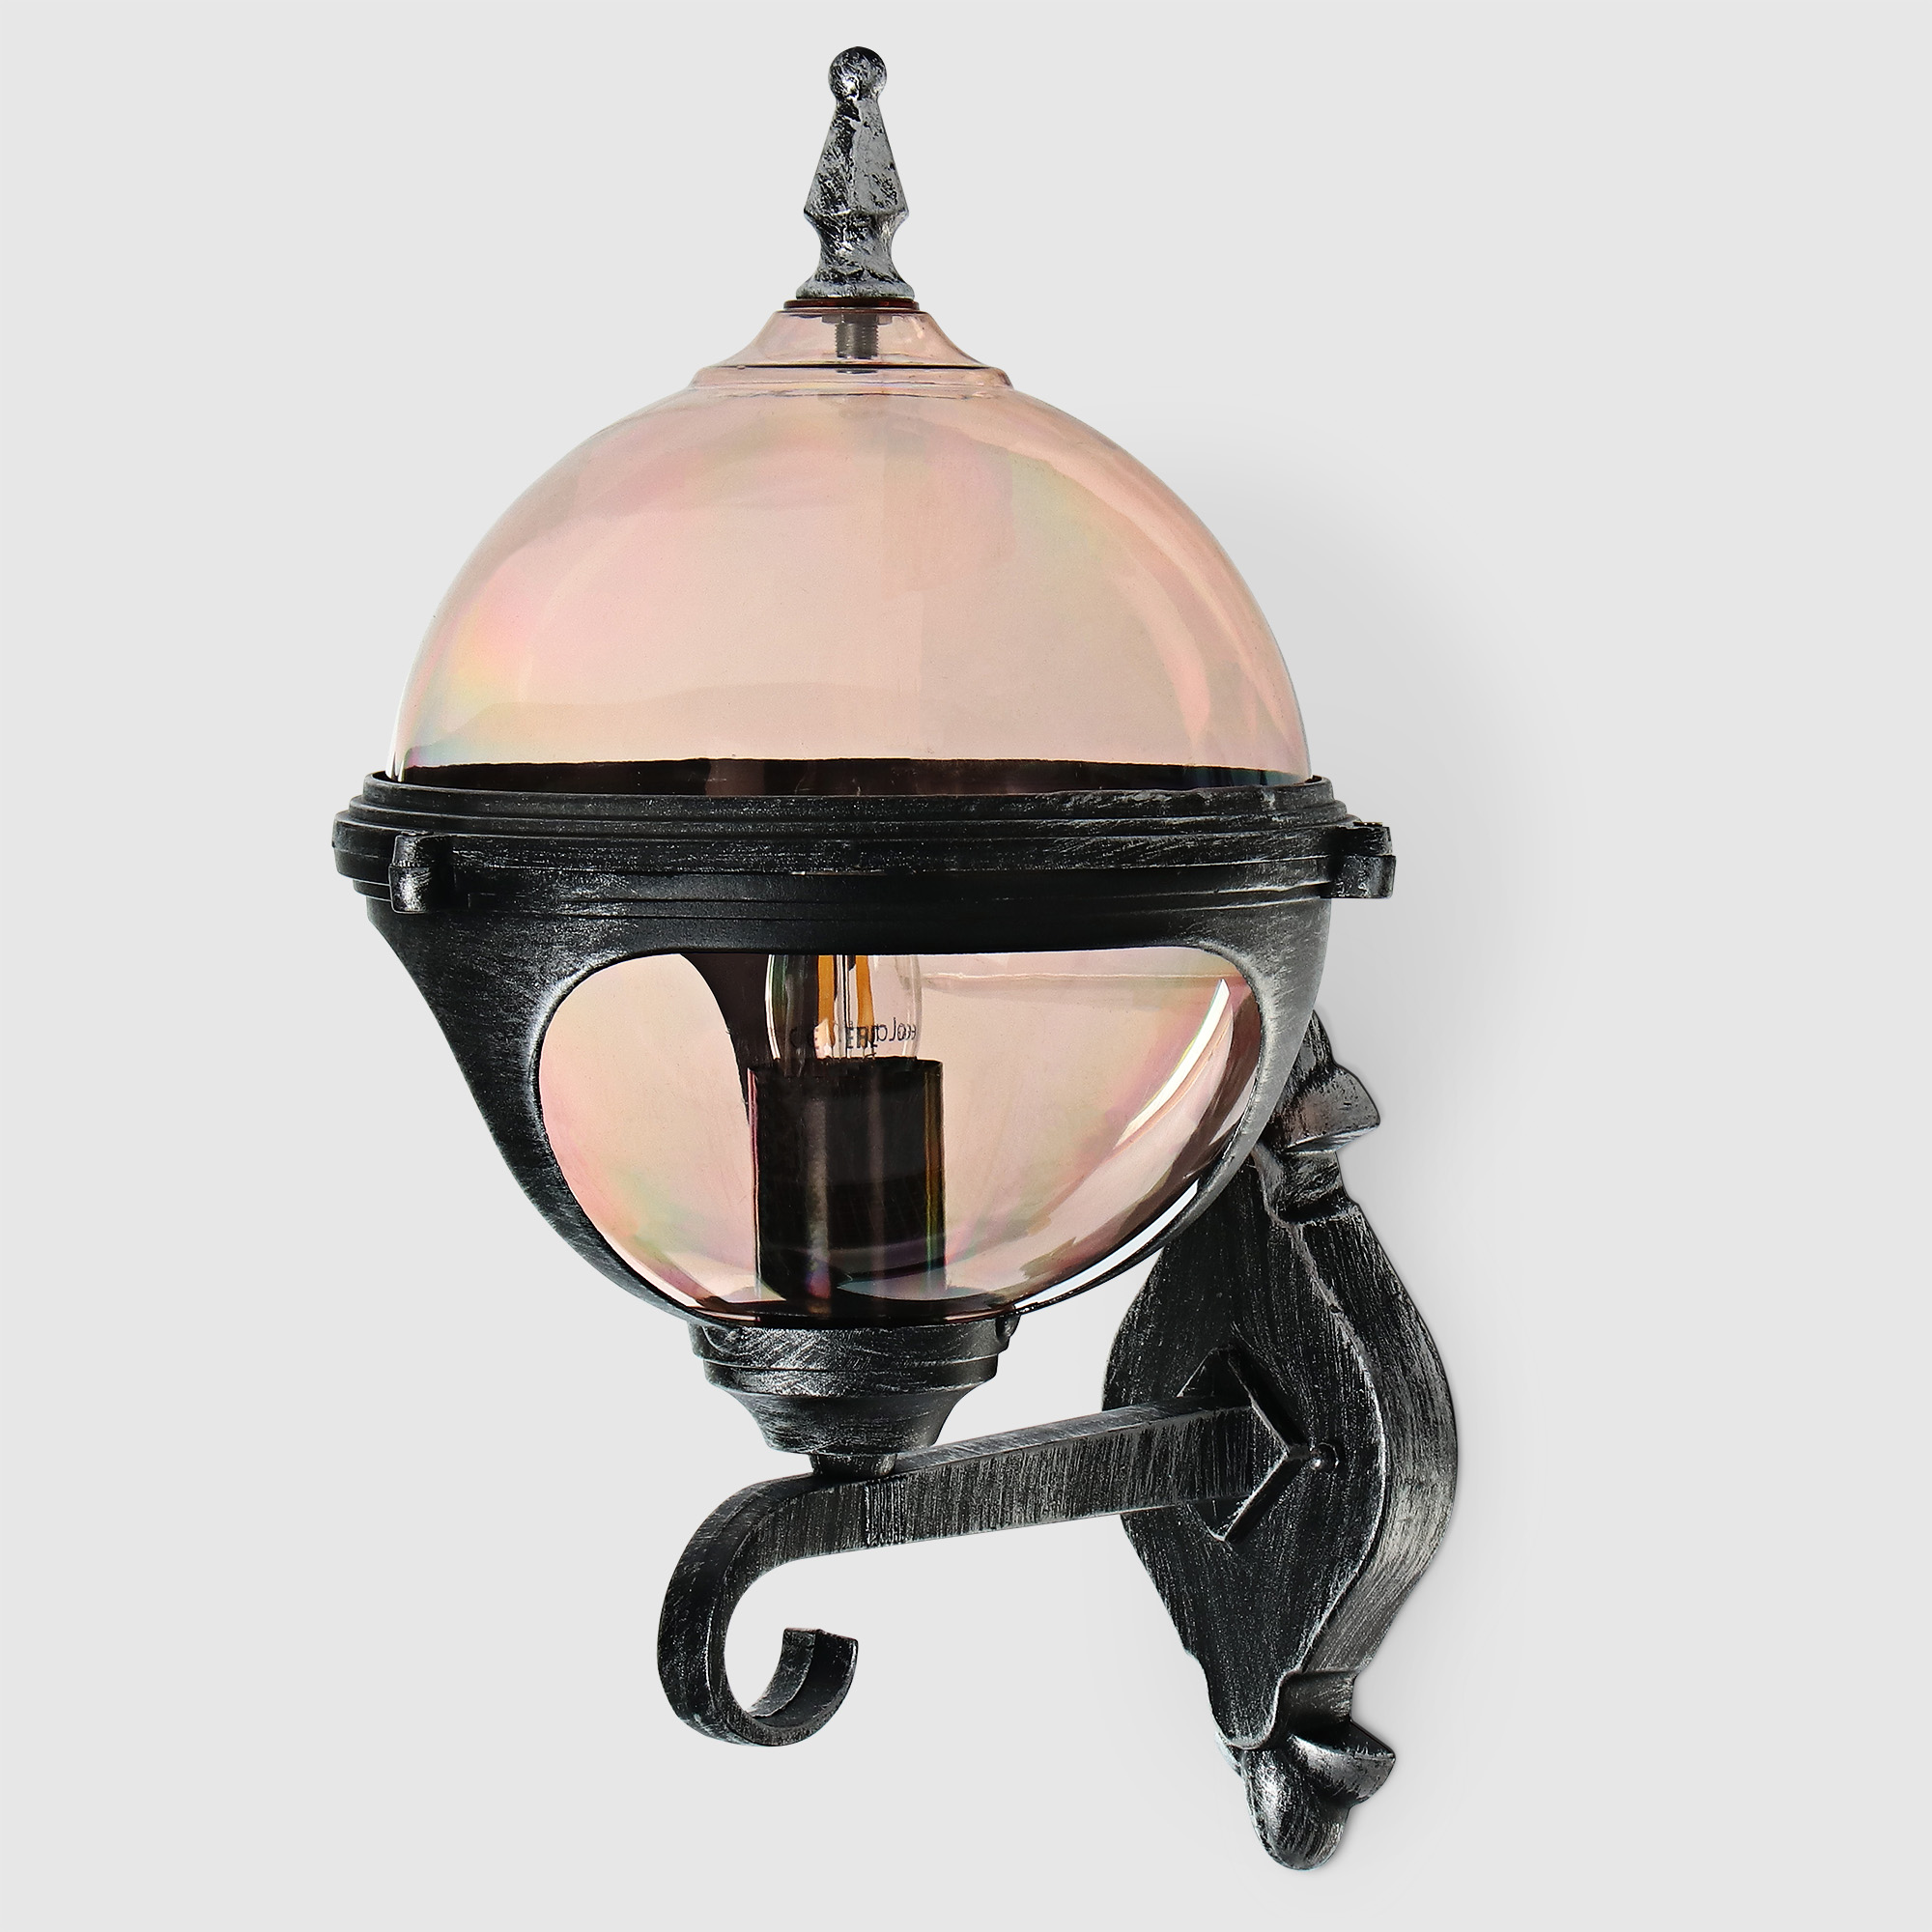 Светильник настенный Amber Lamp 8262B садовый, черное серебро светильник настенный amber lamp 8262b садовый черное серебро